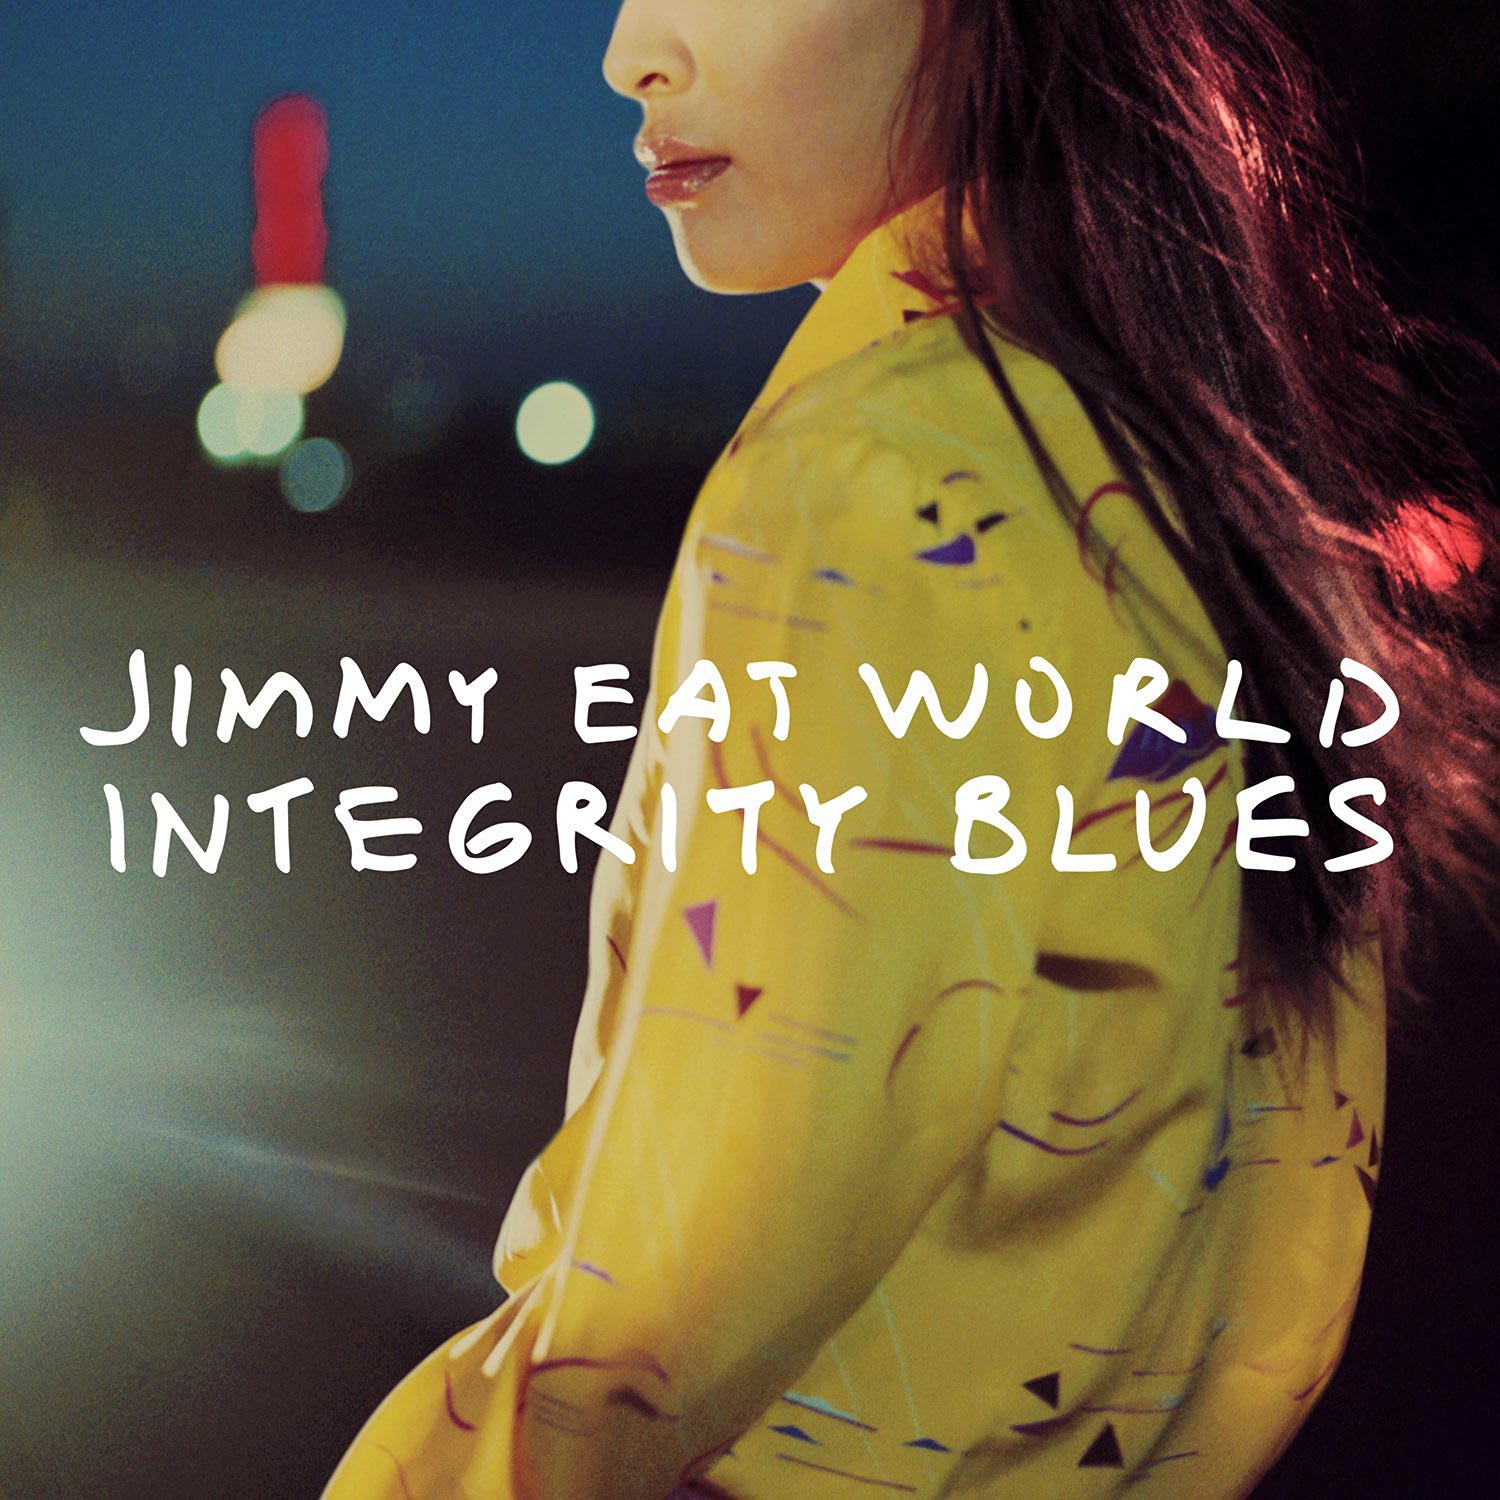 Jimmy Eat World: Integrity blues, la portada del disco